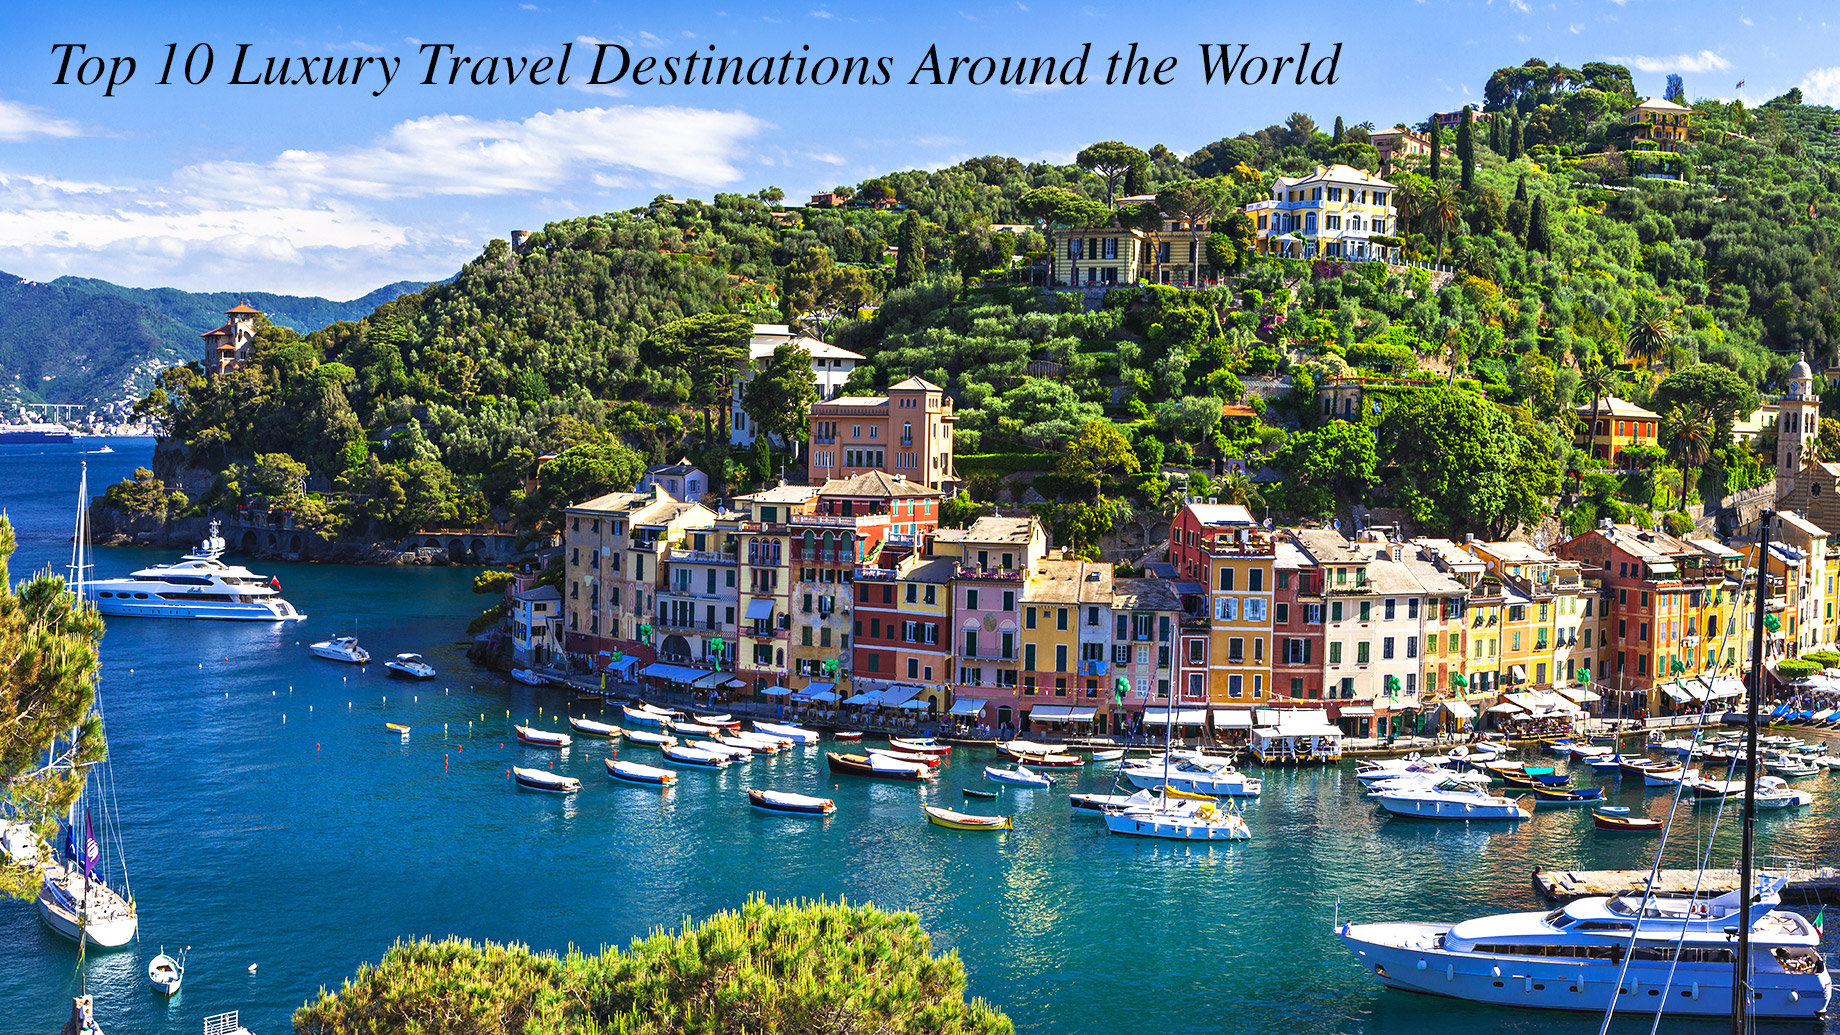 Top 10 Luxury Travel Destinations Around the World